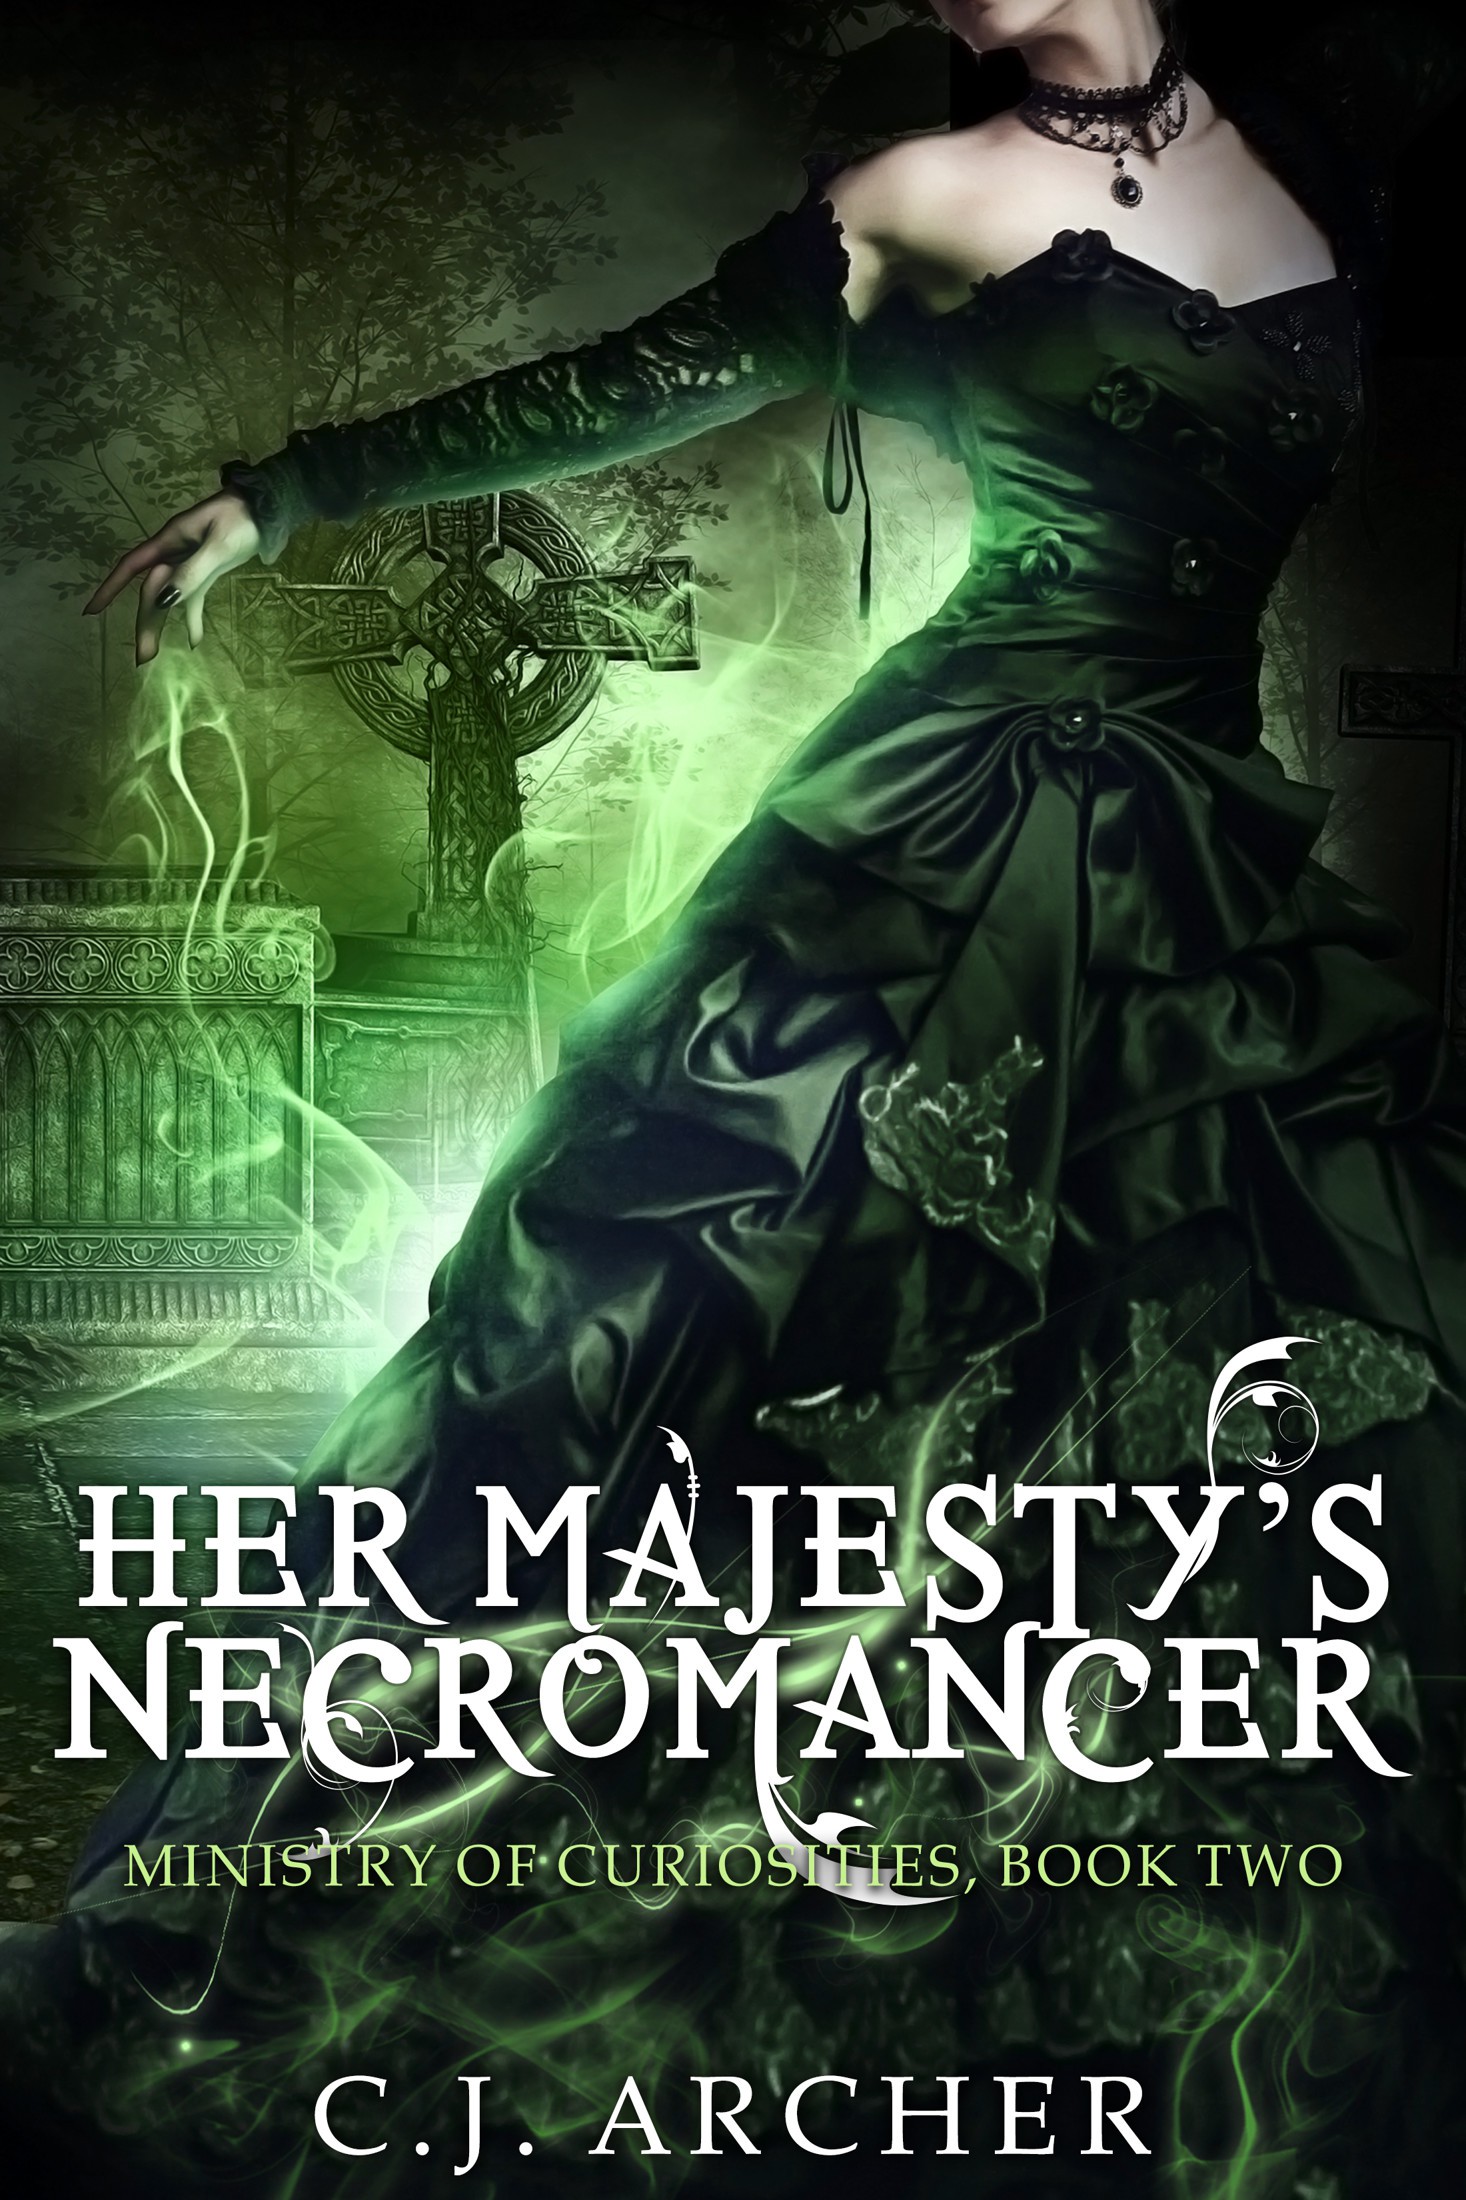 Her Majesty's Necromancer by C. J. Archer